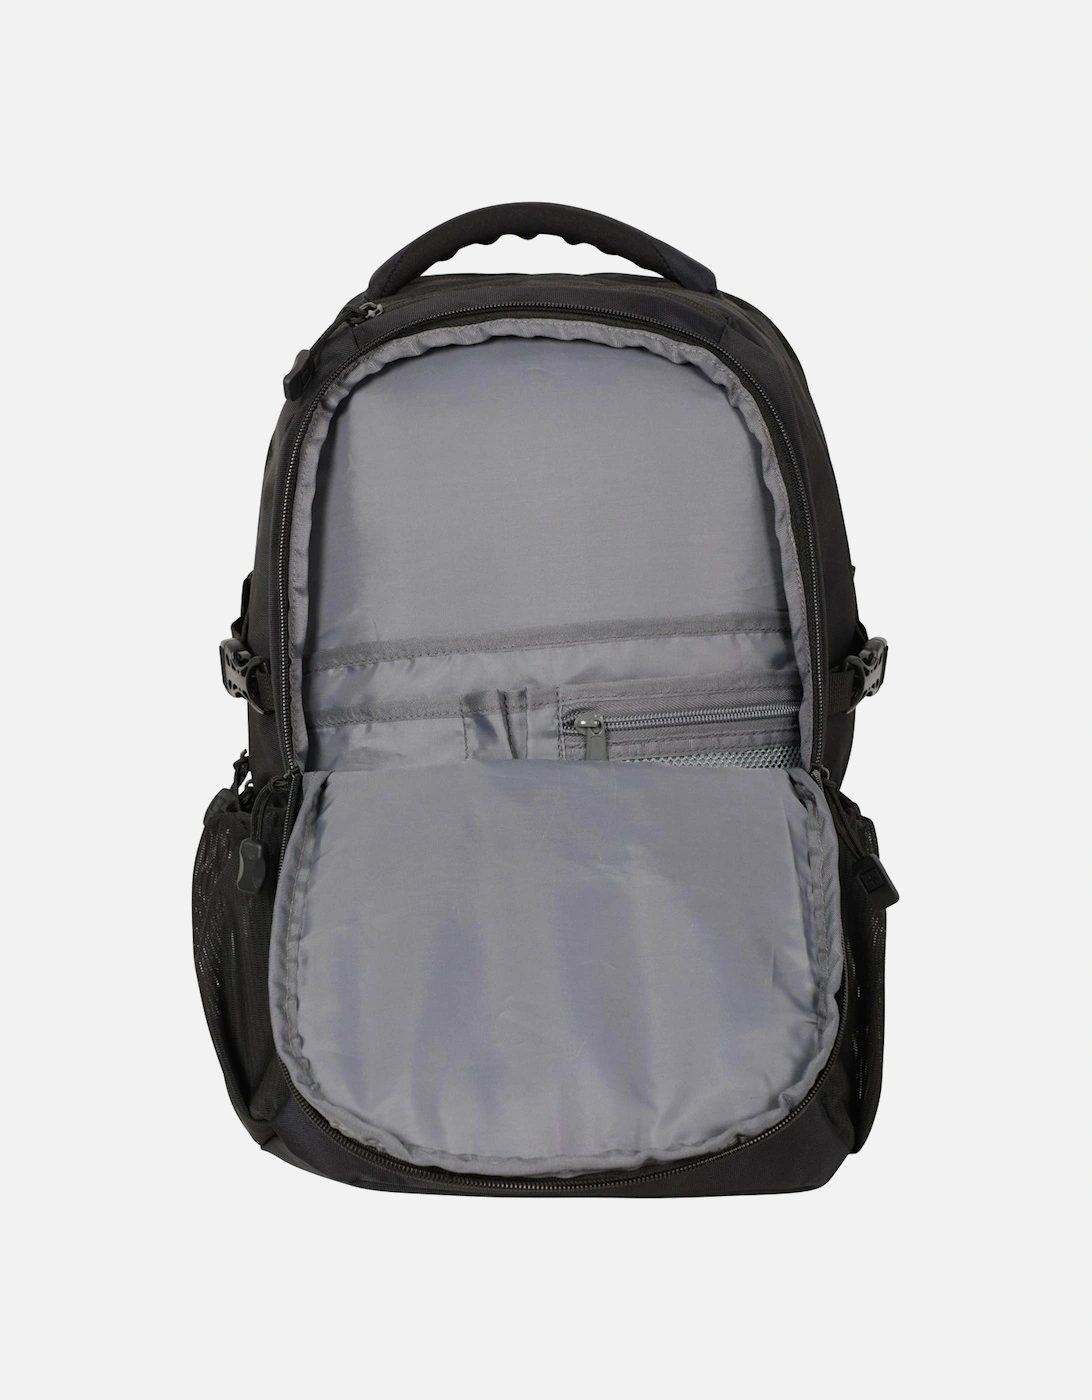 30L Laptop Backpack